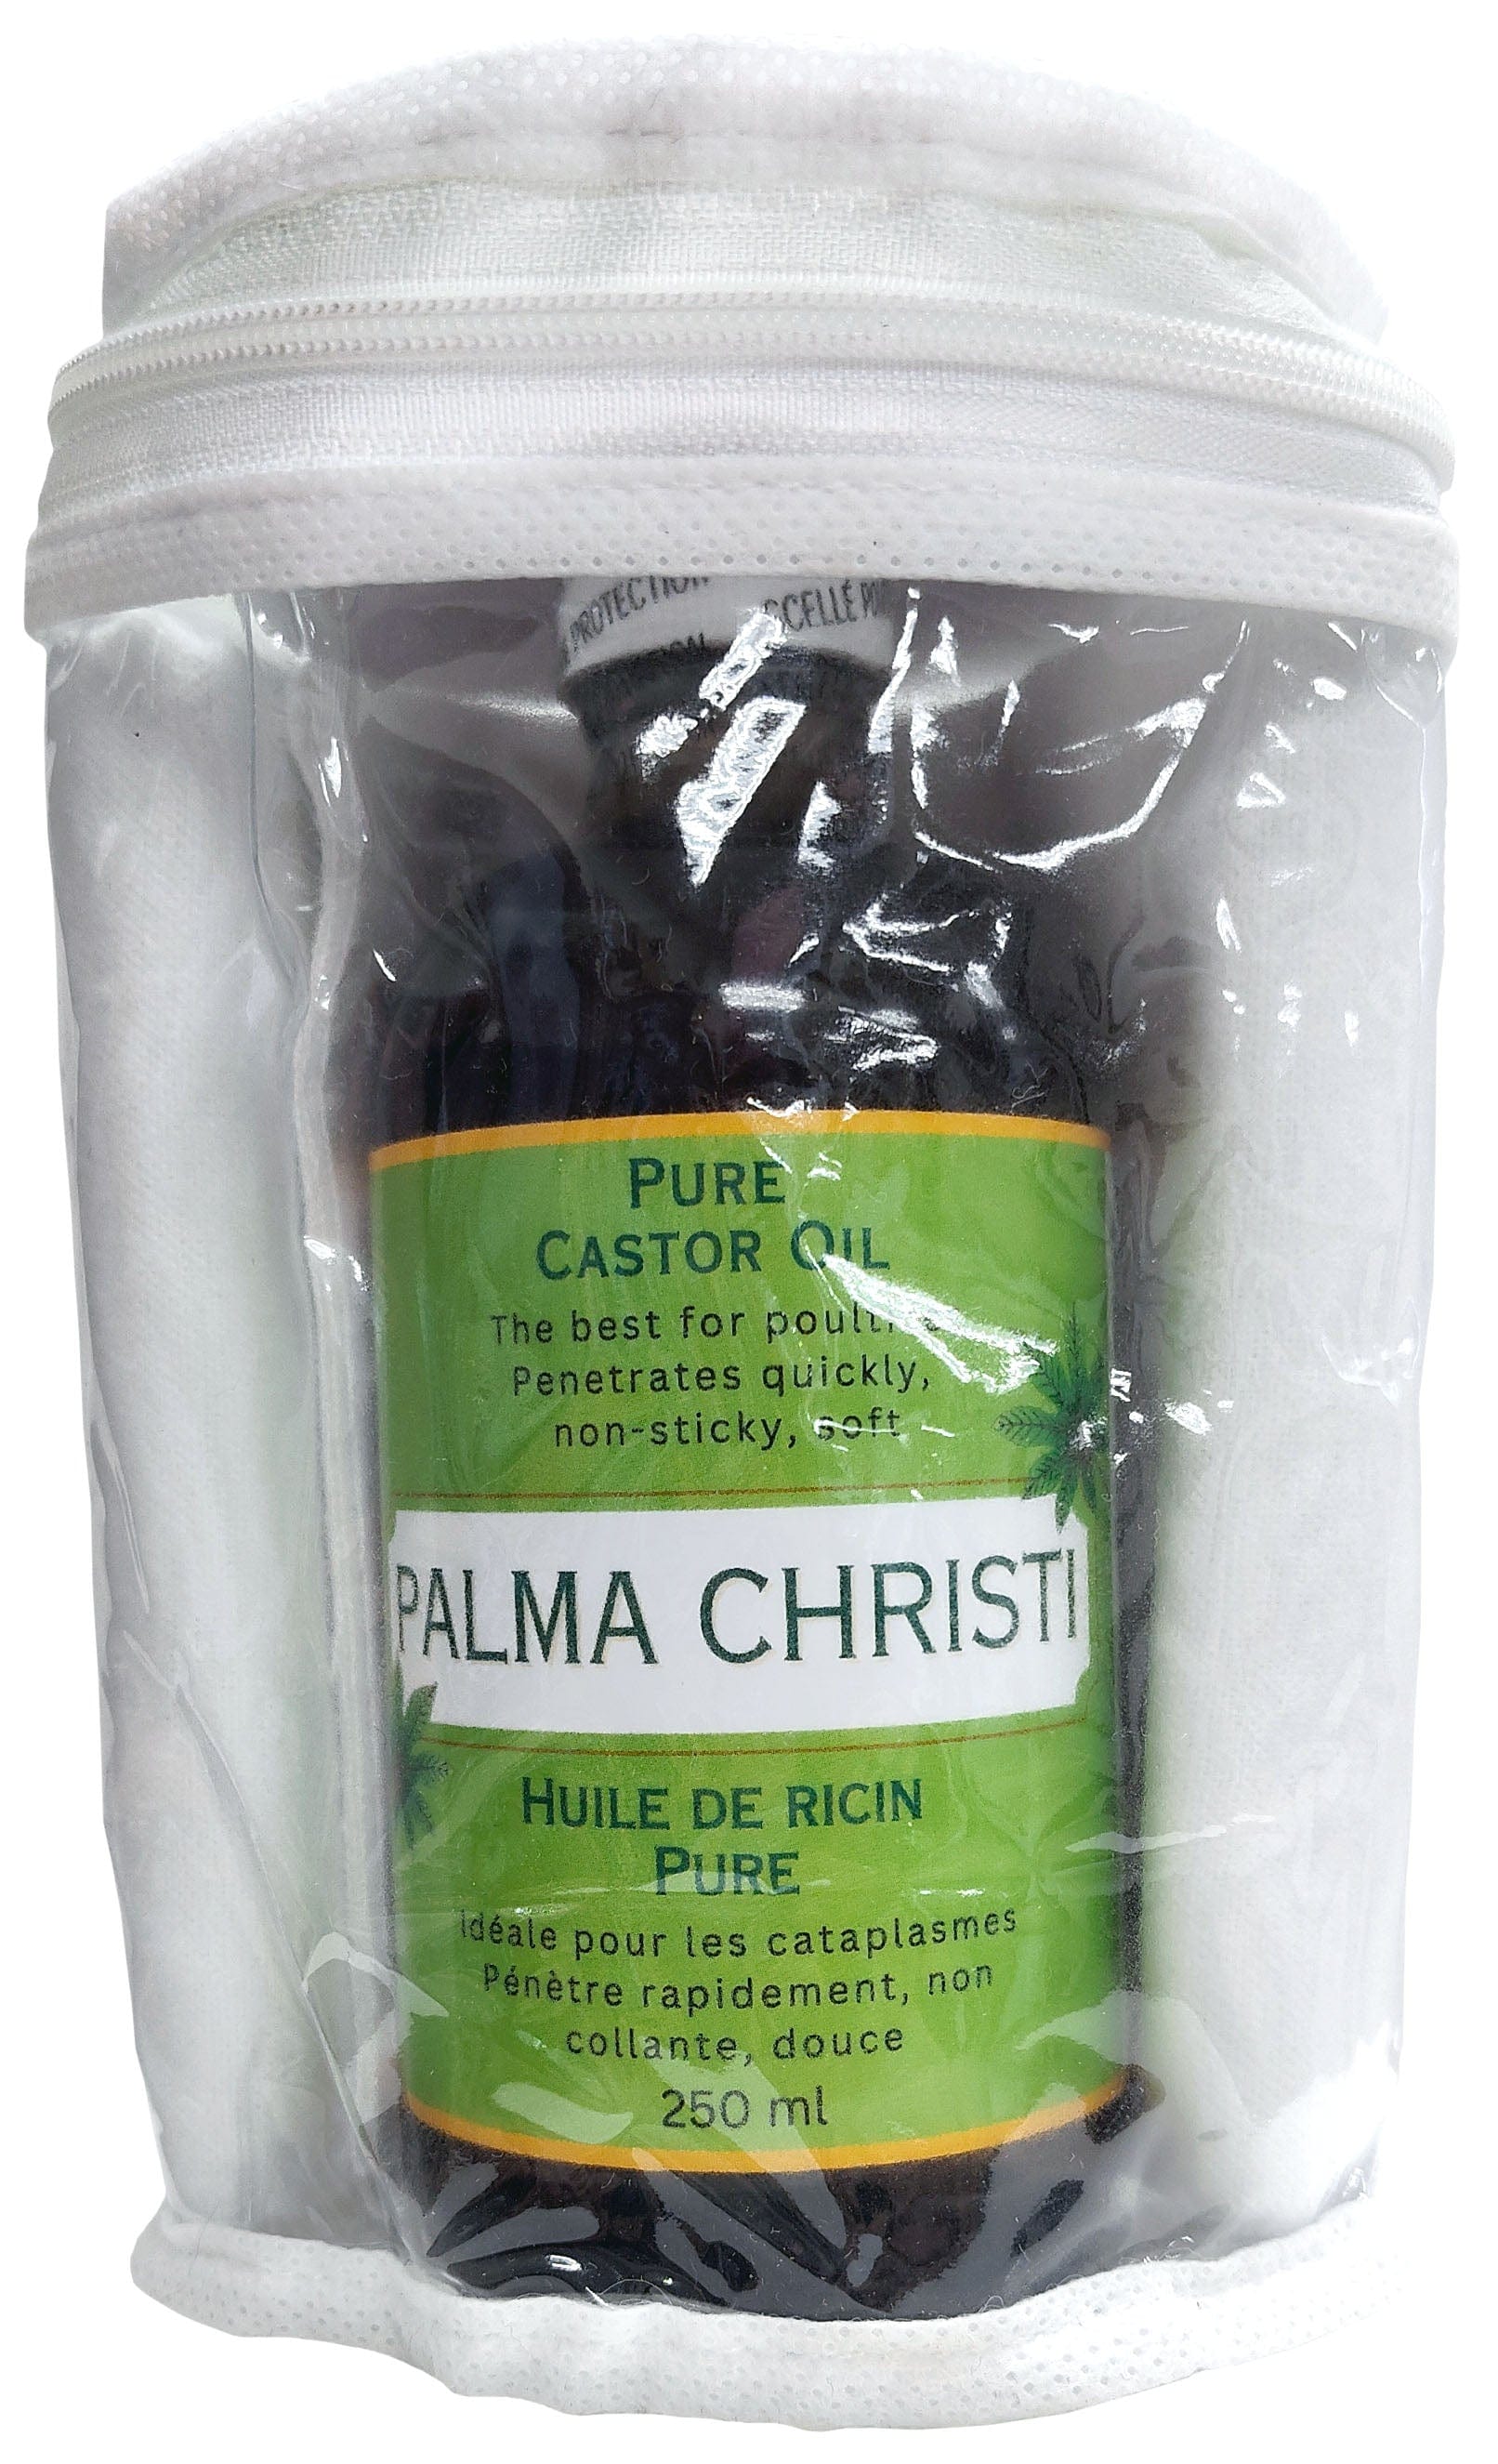 PALMA CHRISTI NATURELLE Soins & Beauté Palma kit pour cataplasme (huile de ricin pure 250ml, flanelle de coton, instructions) 1kit